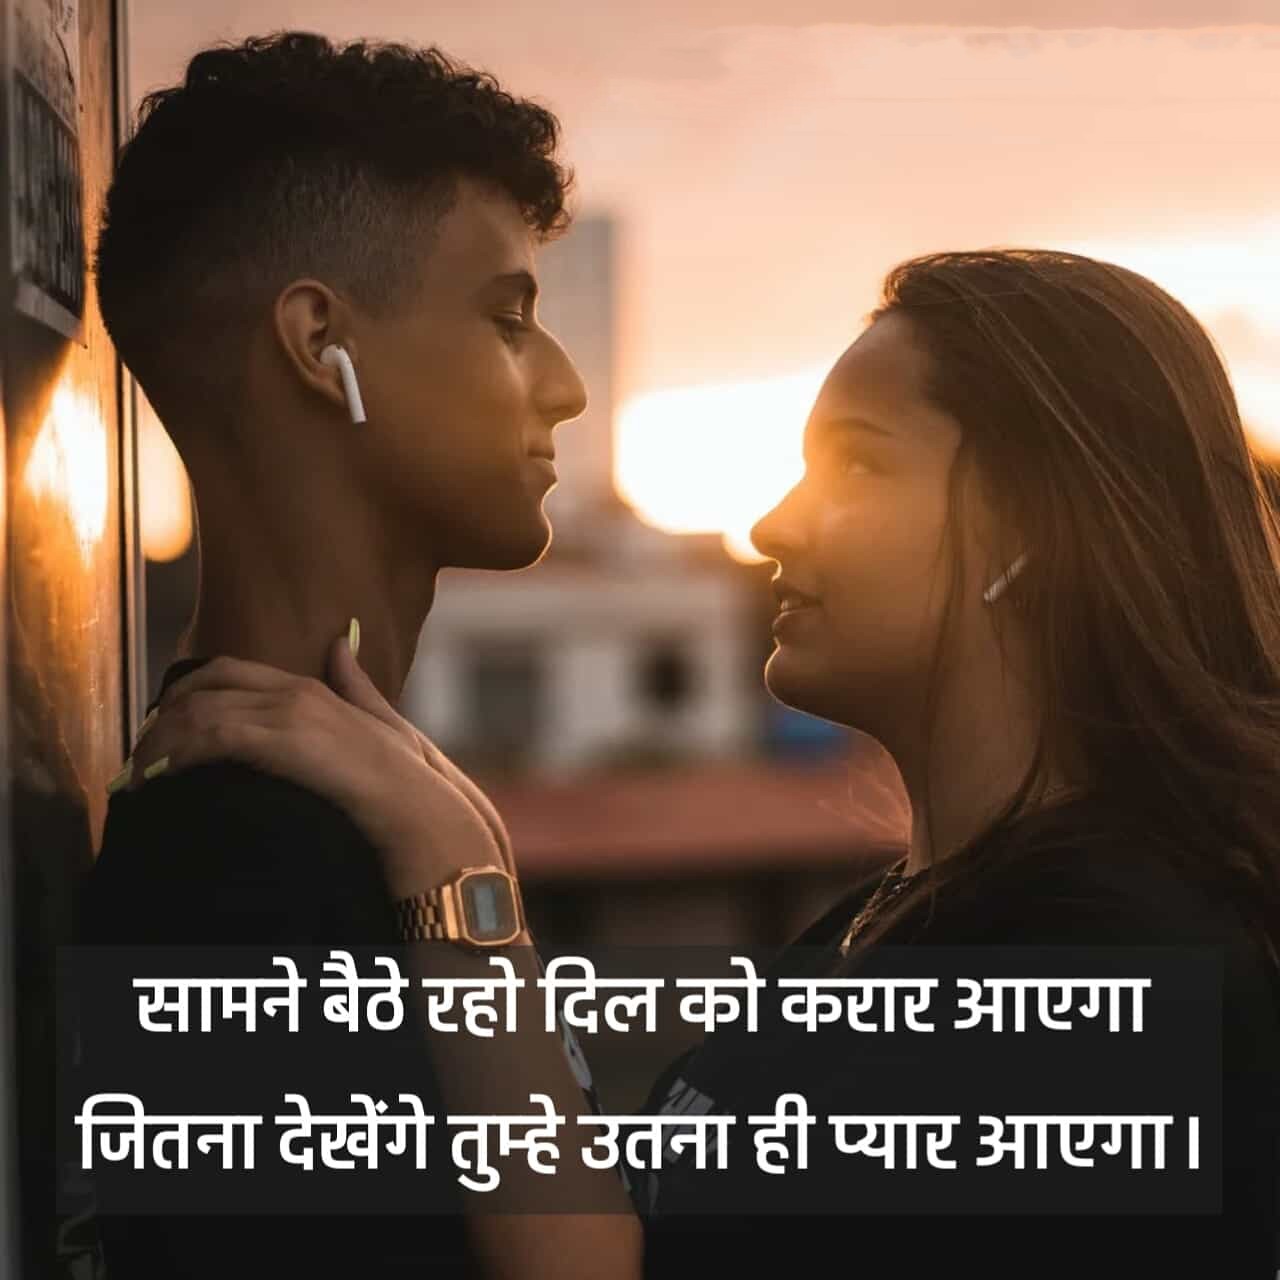 Romantic Shayari in Hindi 2